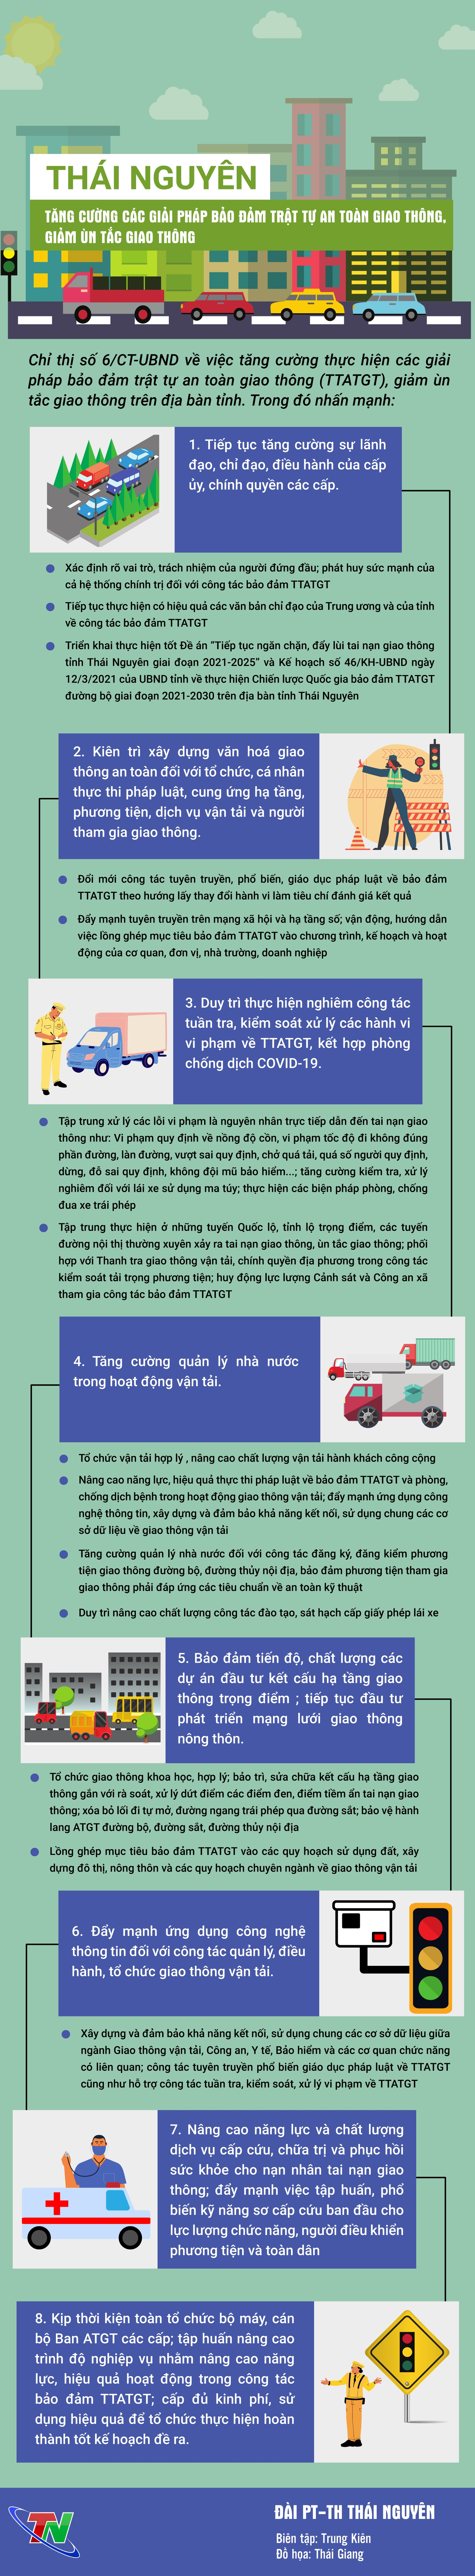 [Infographic] Thái Nguyên: Tăng cường các giải pháp bảo đảm trật tự an toàn giao thông